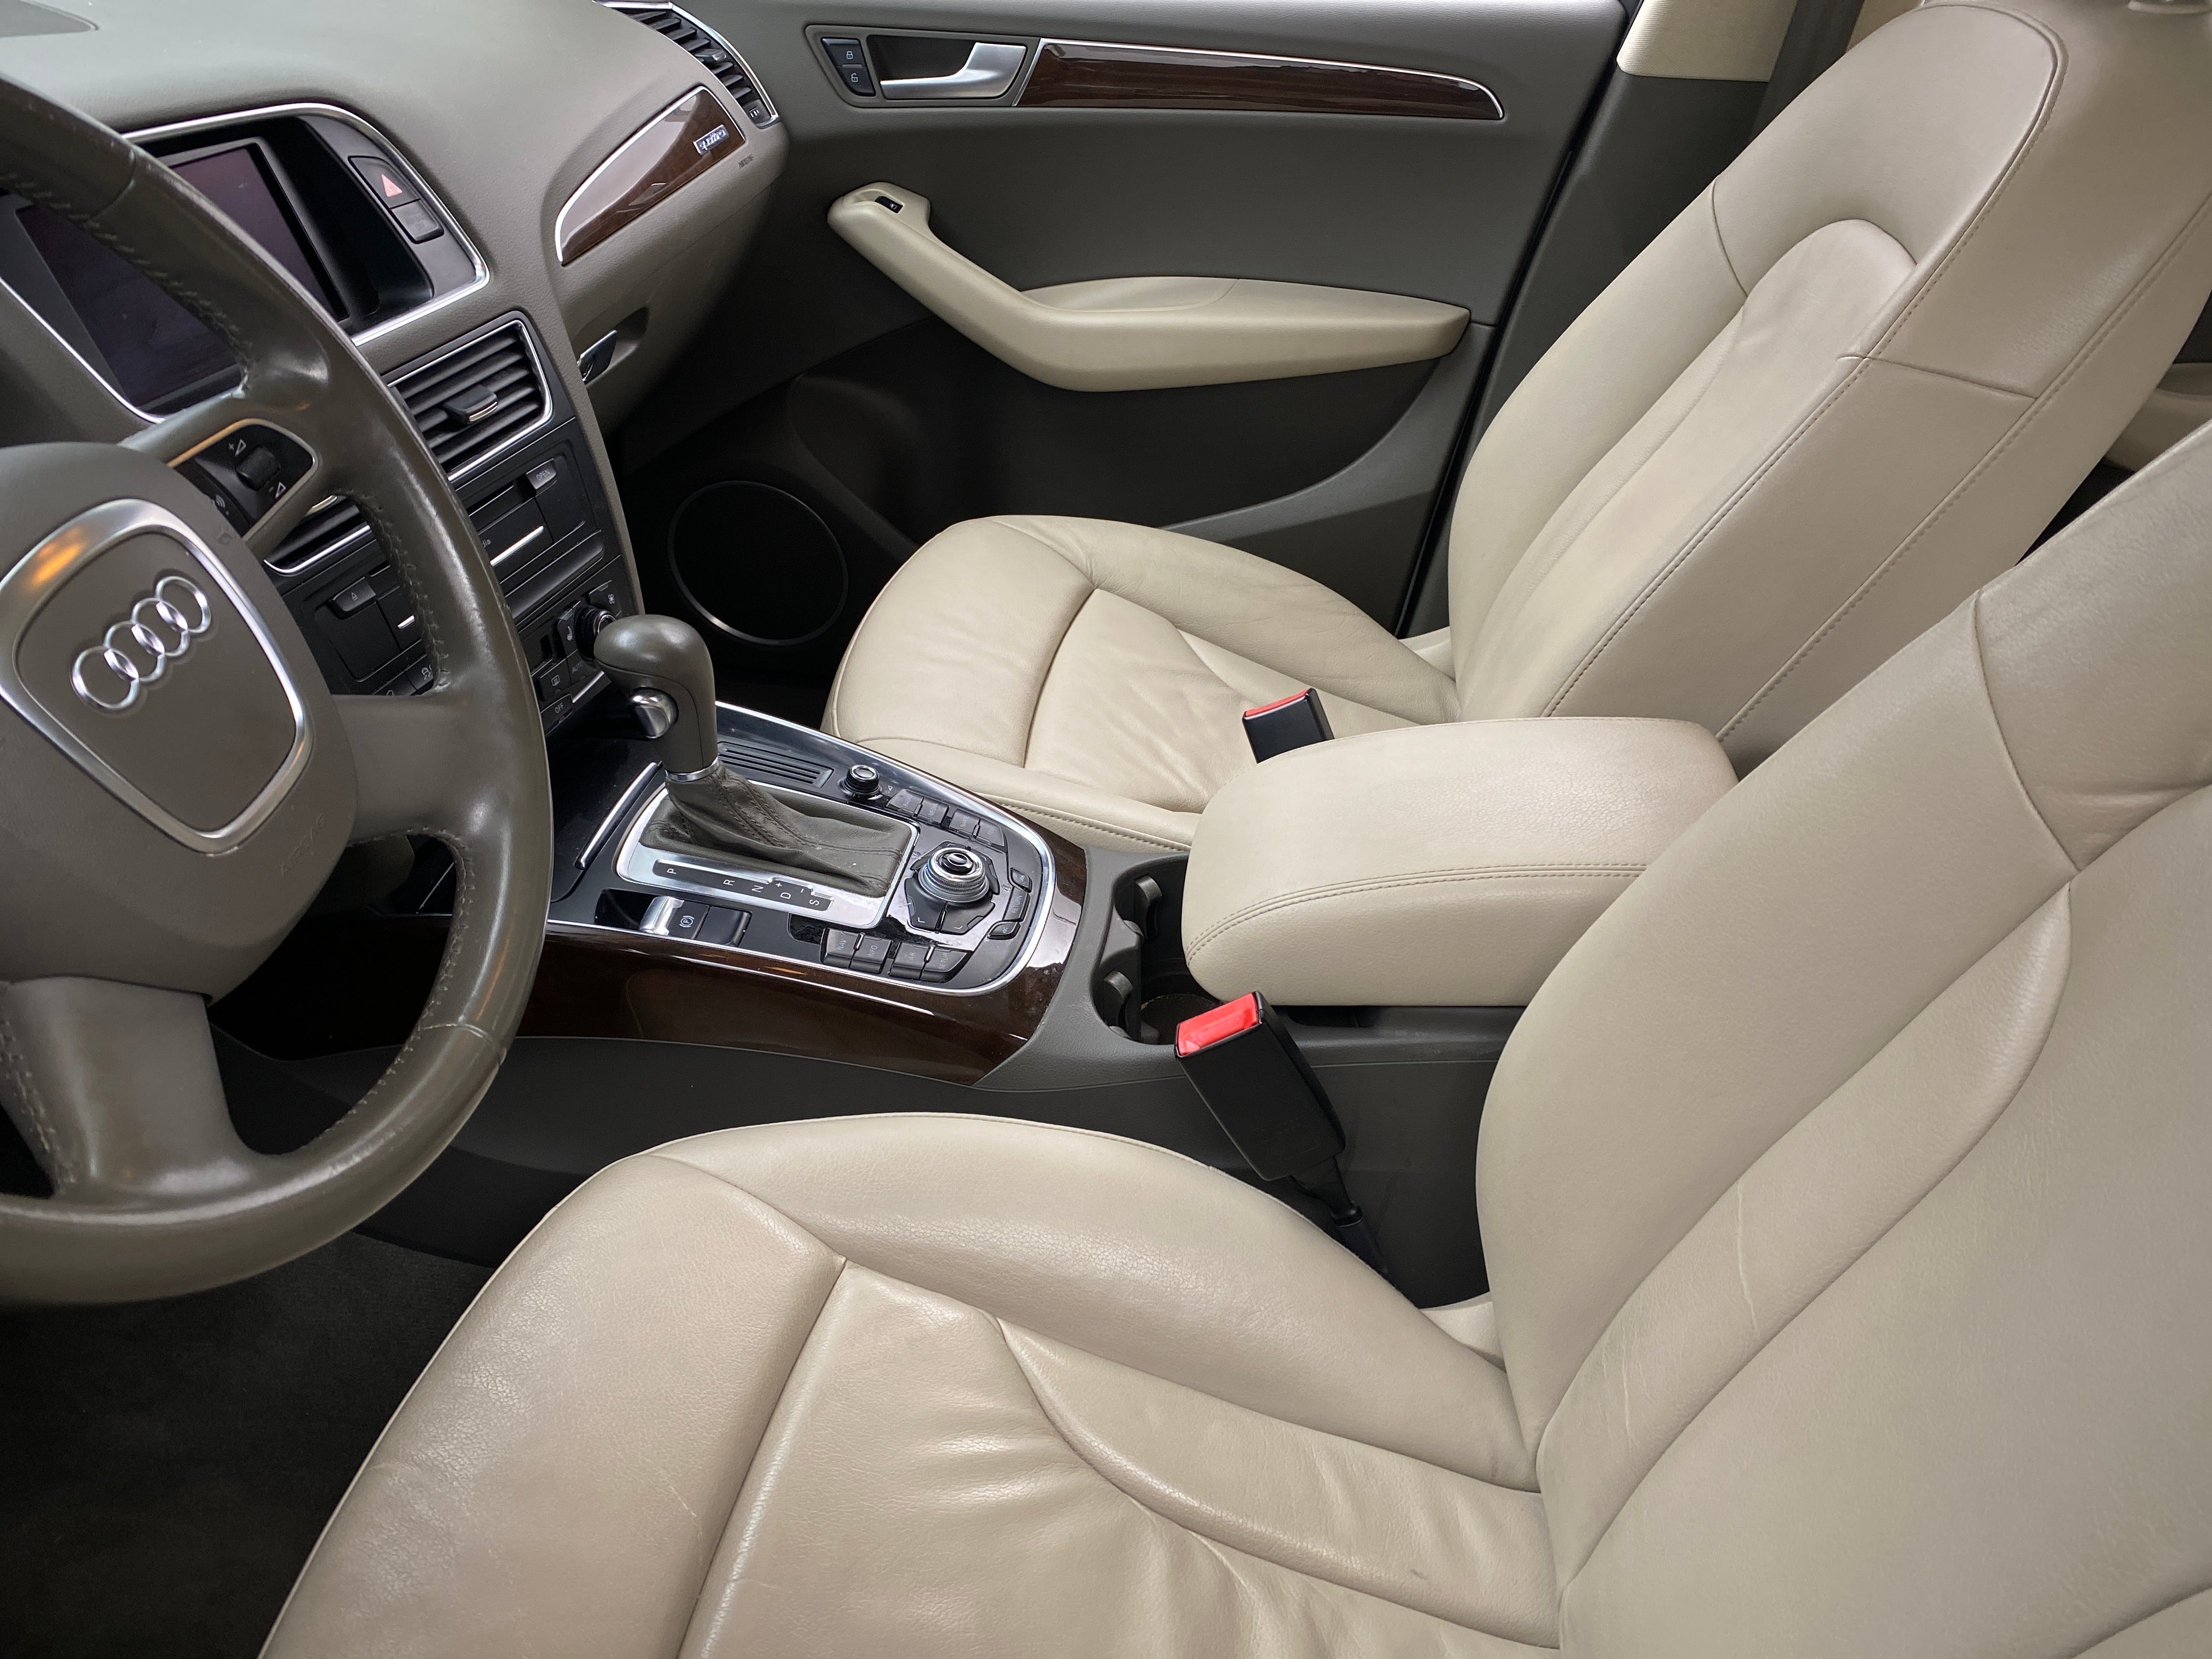 New Audi Q5 Interior | Audi q5, Audi, Audi interior